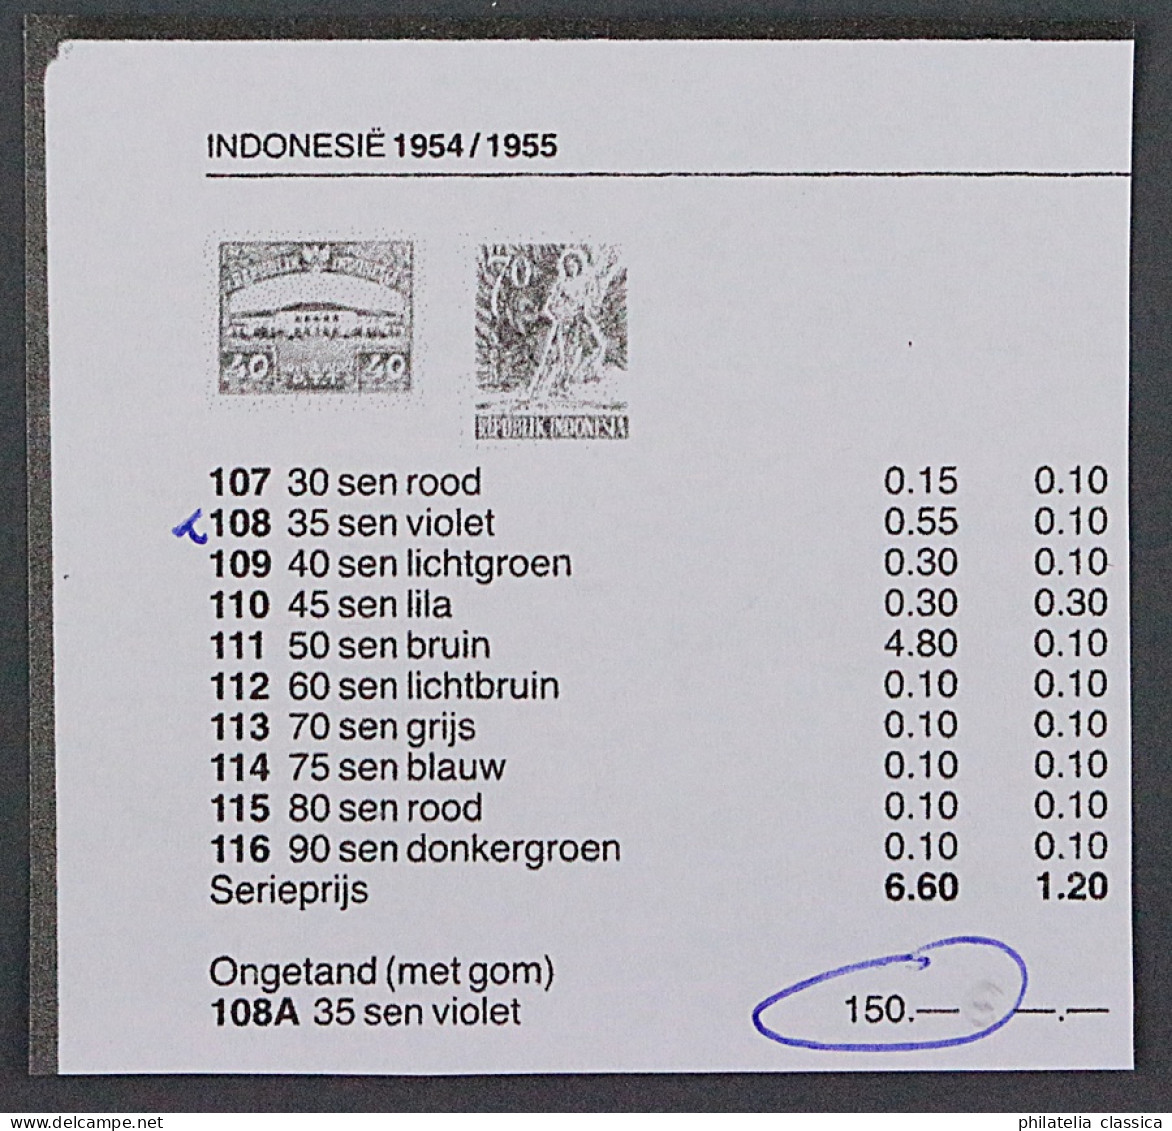 1952, INDONESIEN 101 U Viererblock (*) 35 S. UNGEZÄHNT, SEHR SELTEN, 600,-€ - Indonesia